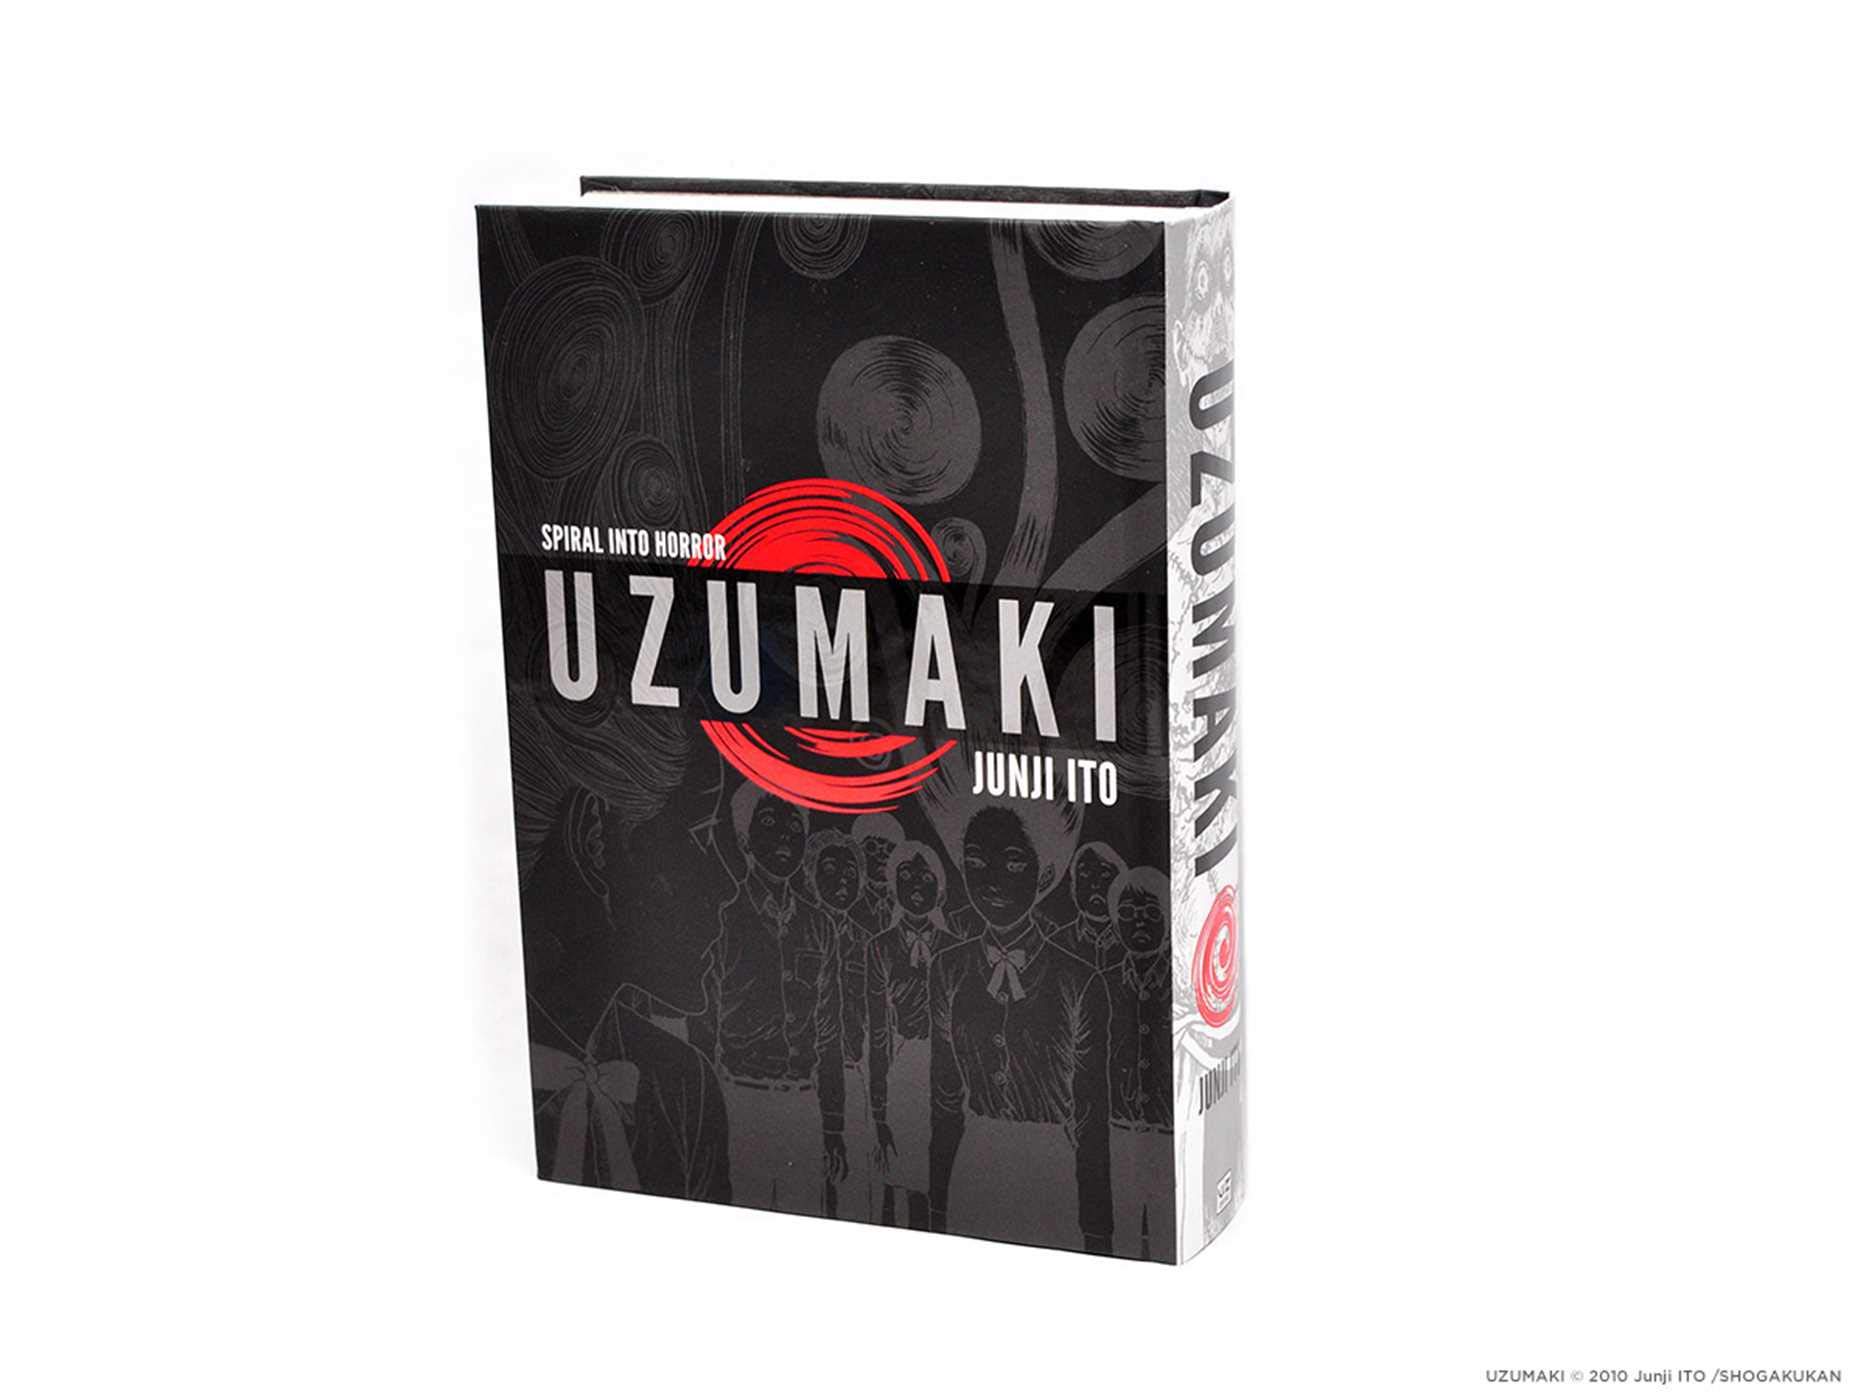 Манга на английском языке «Uzumaki (3-in-1 Deluxe Edition) (Junji Ito)»